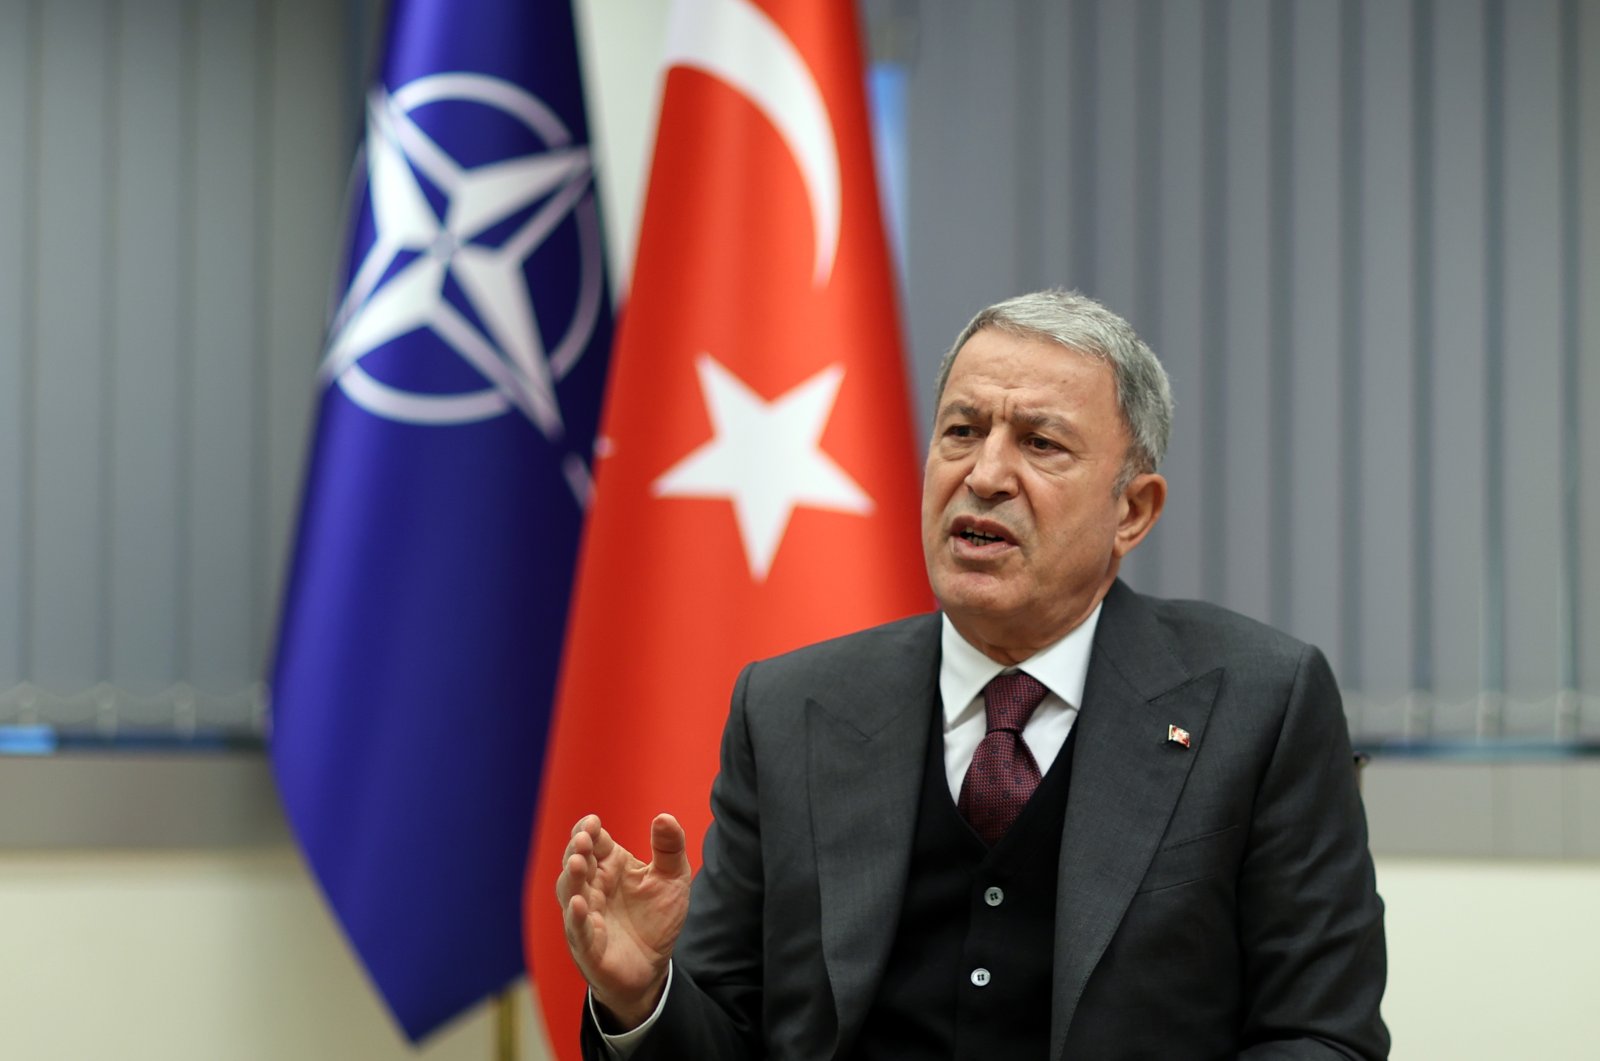 Defense Minister Akar warns against alliances that harm NATO